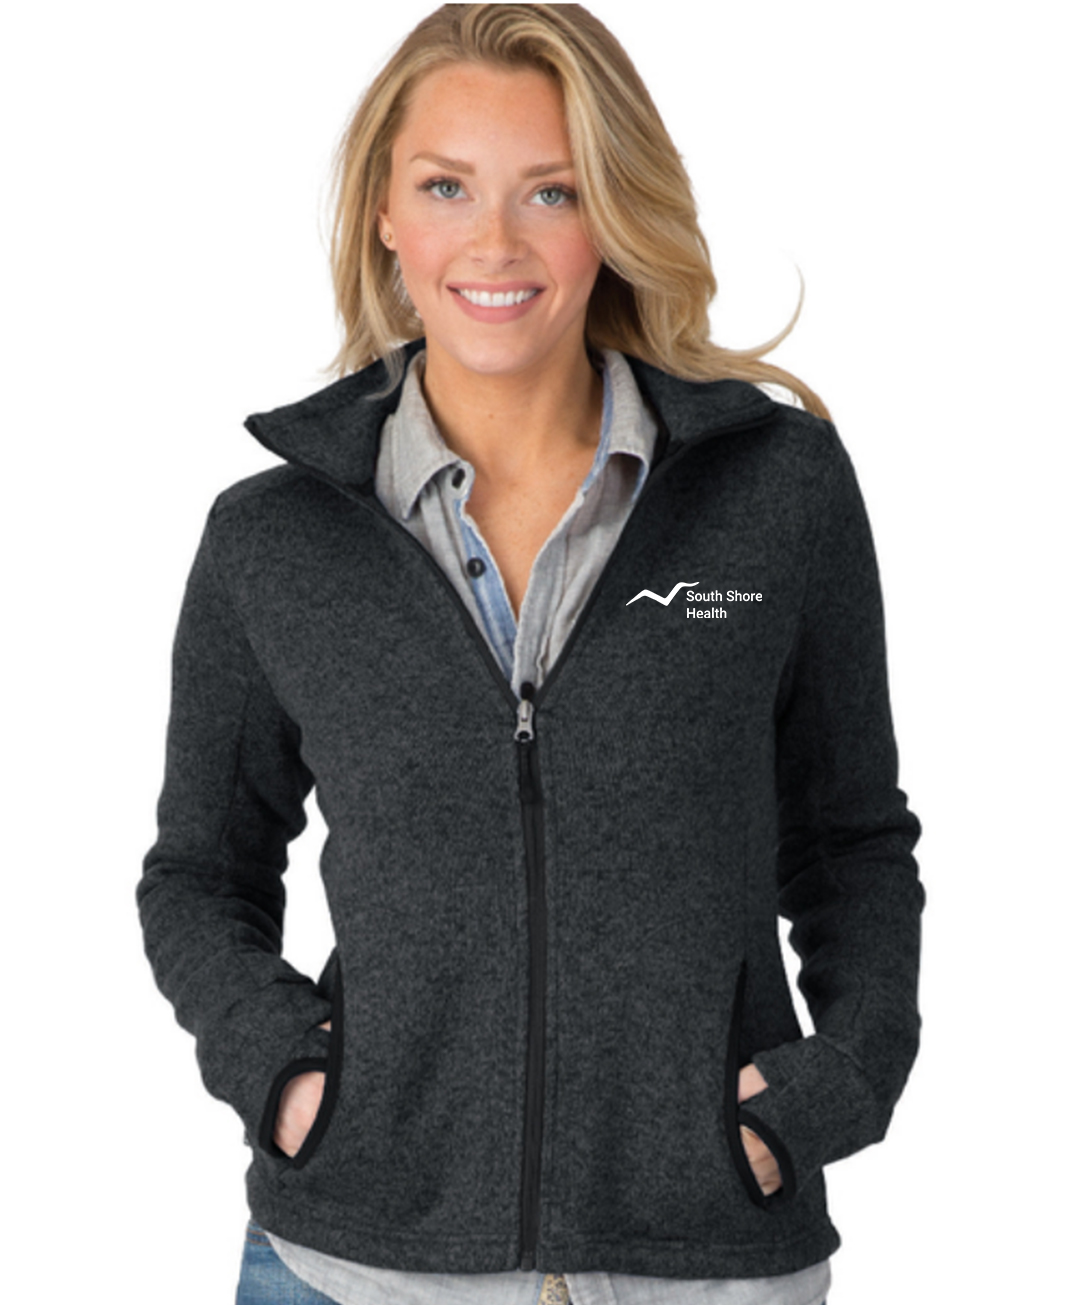 Women's Heathered Fleece Jacket